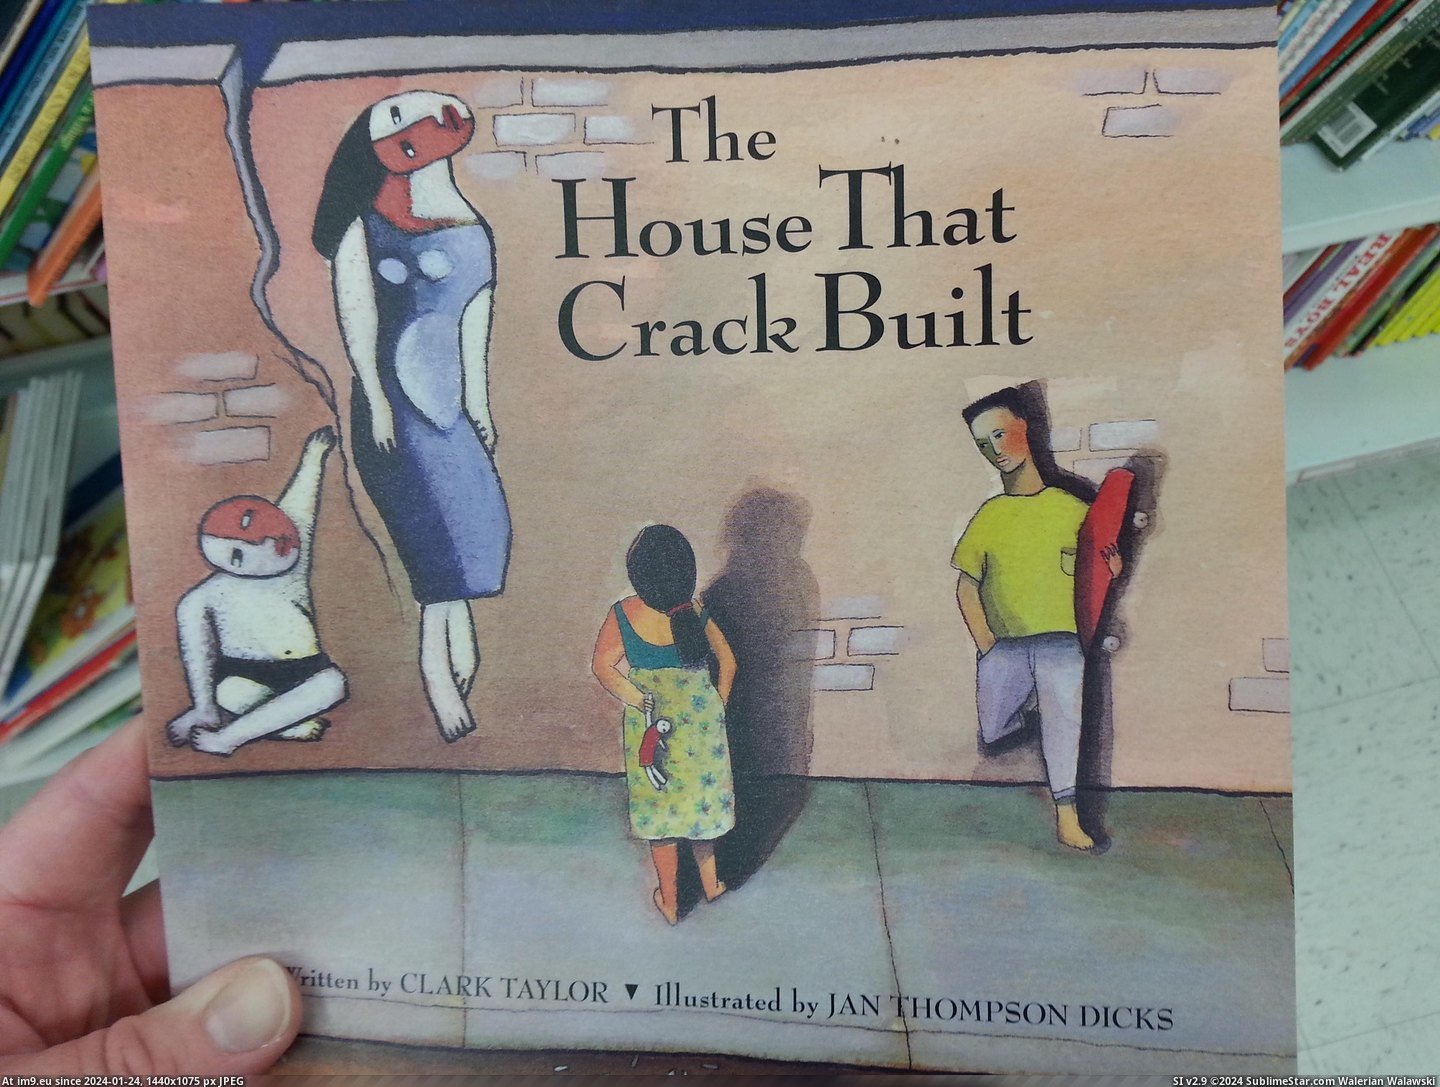 #Wtf #Store #Thrift #Crack #Book #Children [Wtf] Found this children's book about crack at a thrift store today 4 Pic. (Bild von album My r/WTF favs))